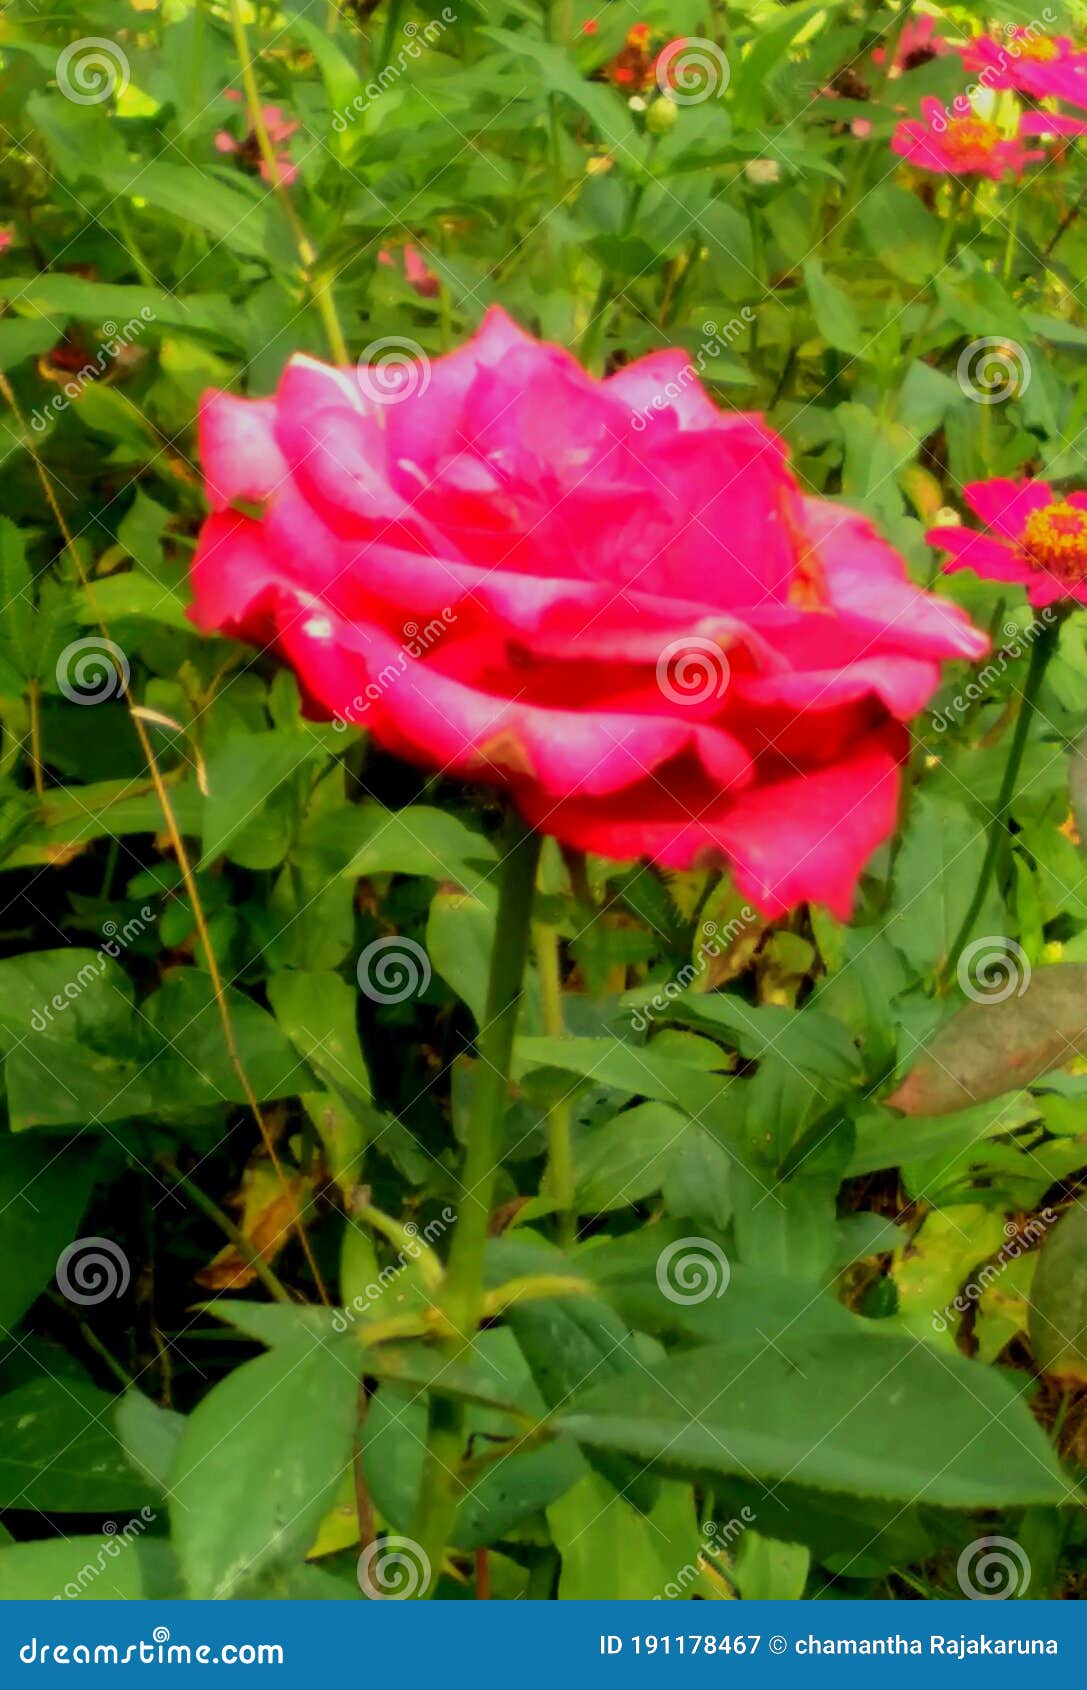 Sri Lankan Rose